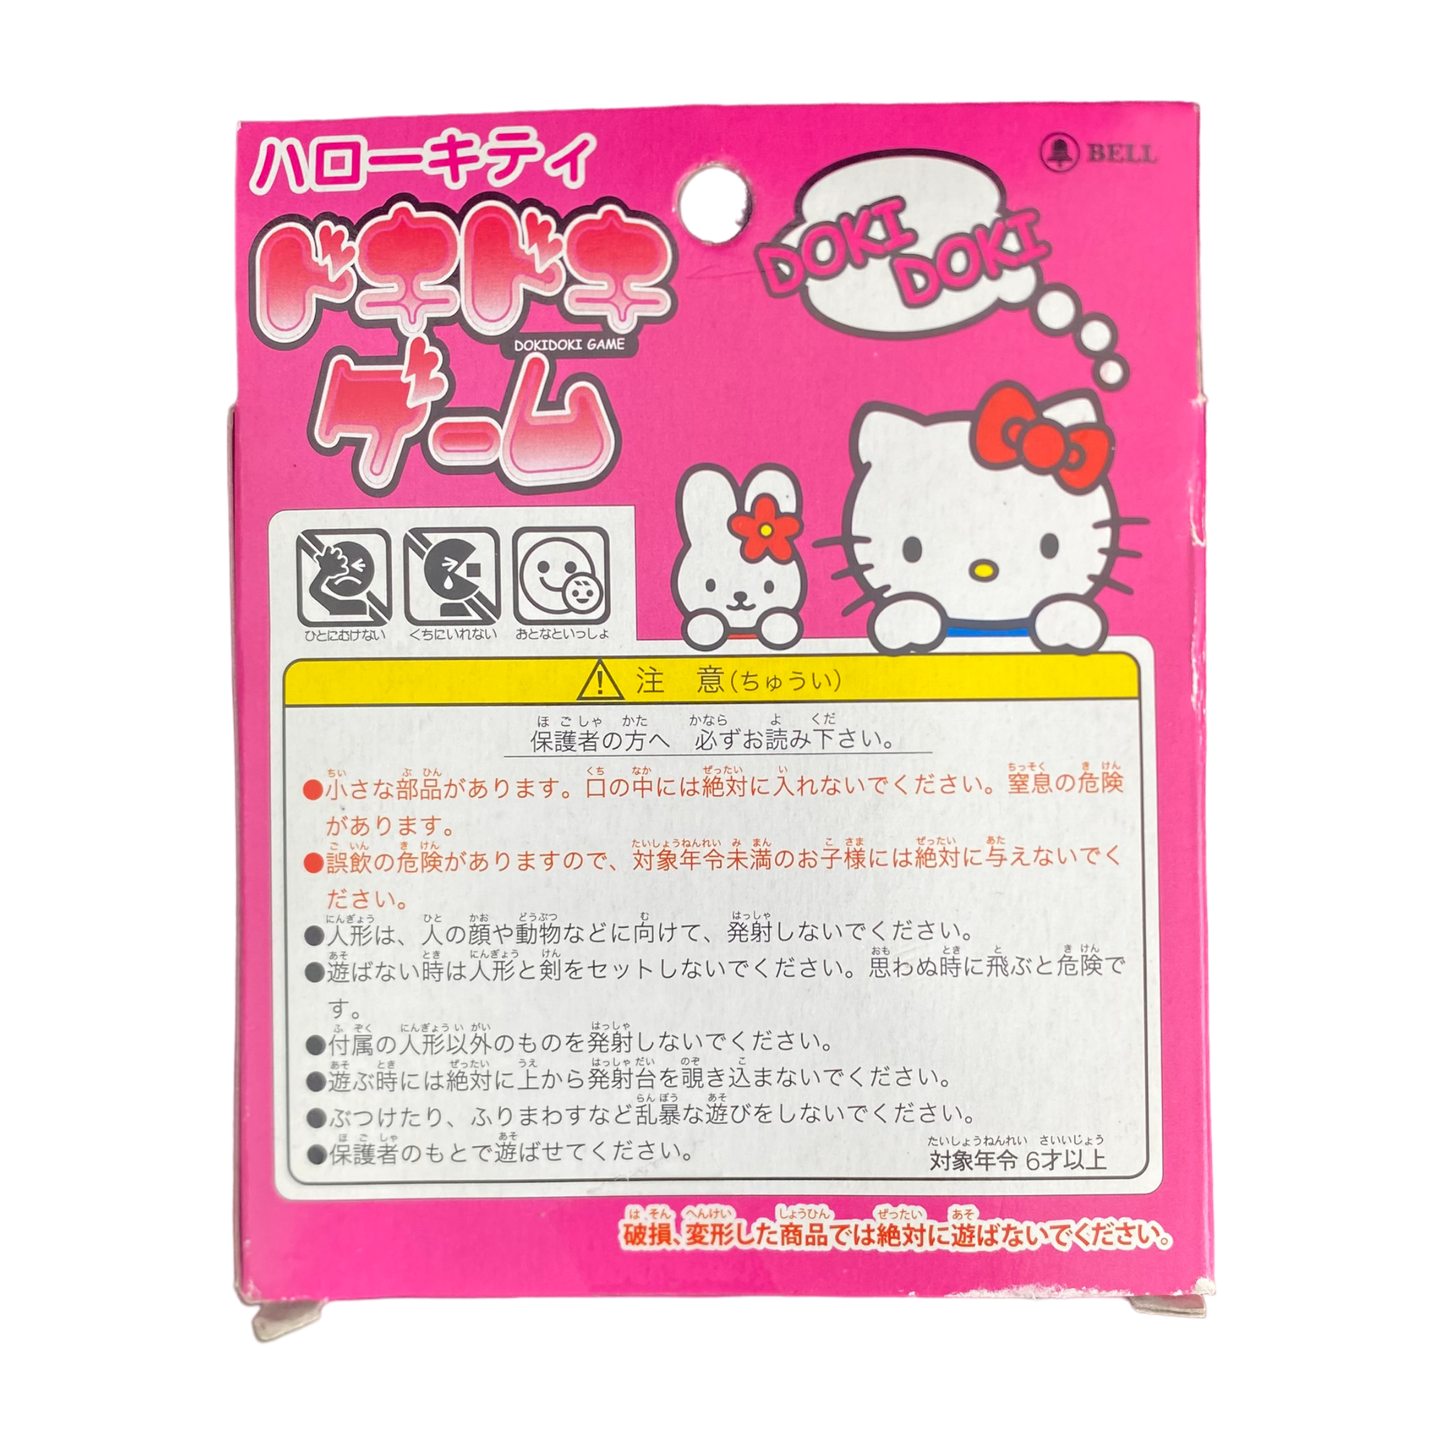 Sanrio - Hello Kitty Doki Doki Game Vintage 2008 Japan Toy